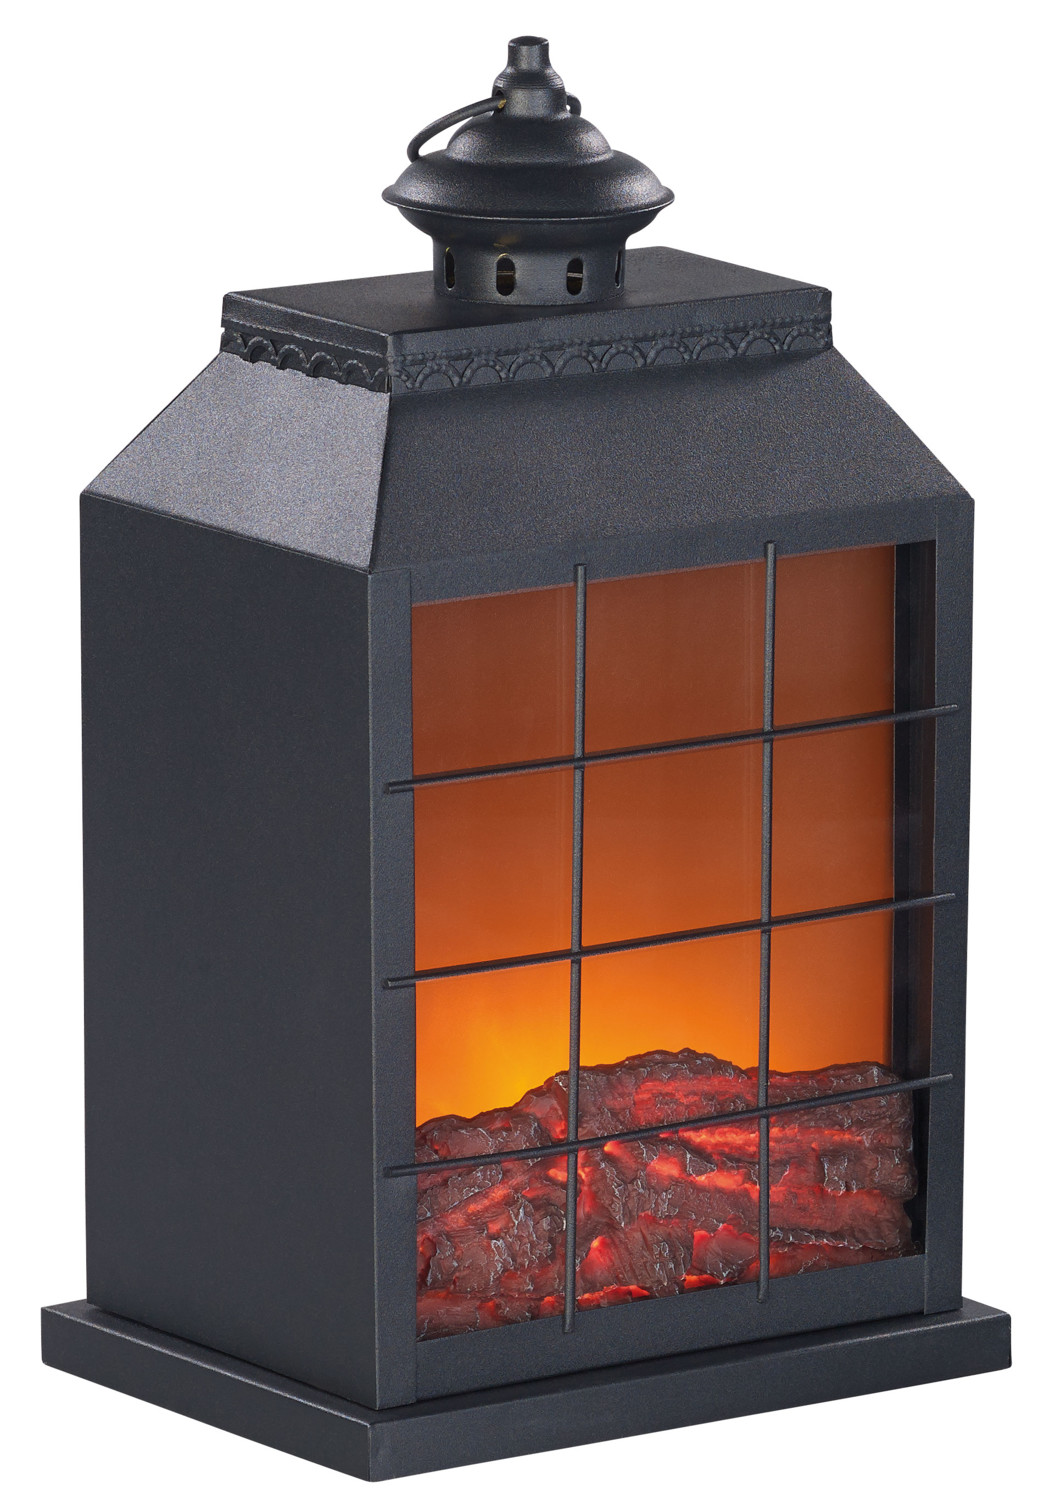 Tendance cheminée décorative - Un feu hyper design en toutes saisons